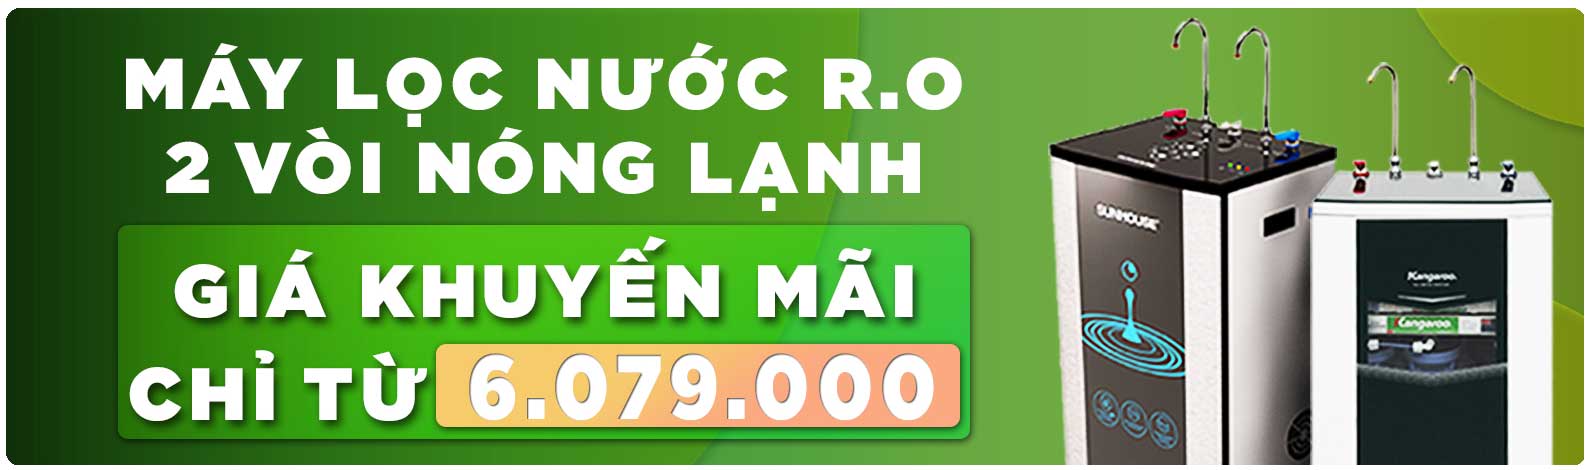 Ưu đãi giảm giá máy lọc nước Sunhouse Kangaroo giá chỉ từ 6.079.000đ tại King Home Việt Nam